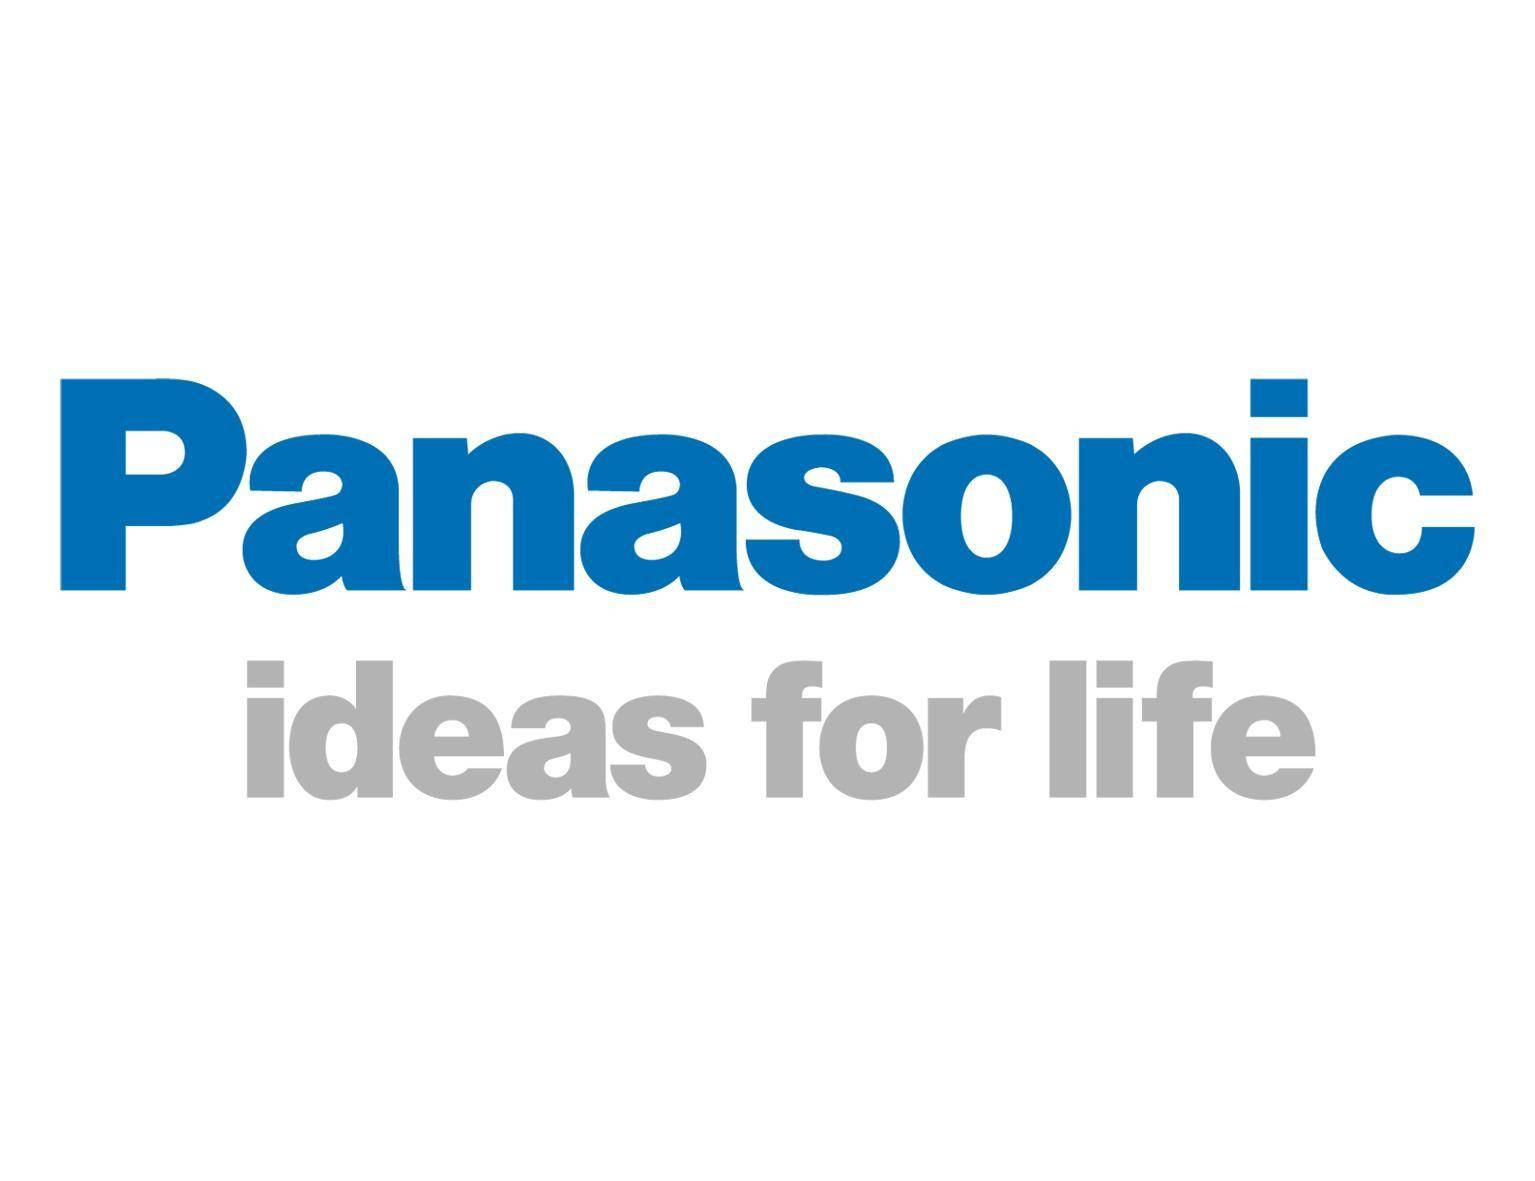 Panasonic White Background Wallpaper